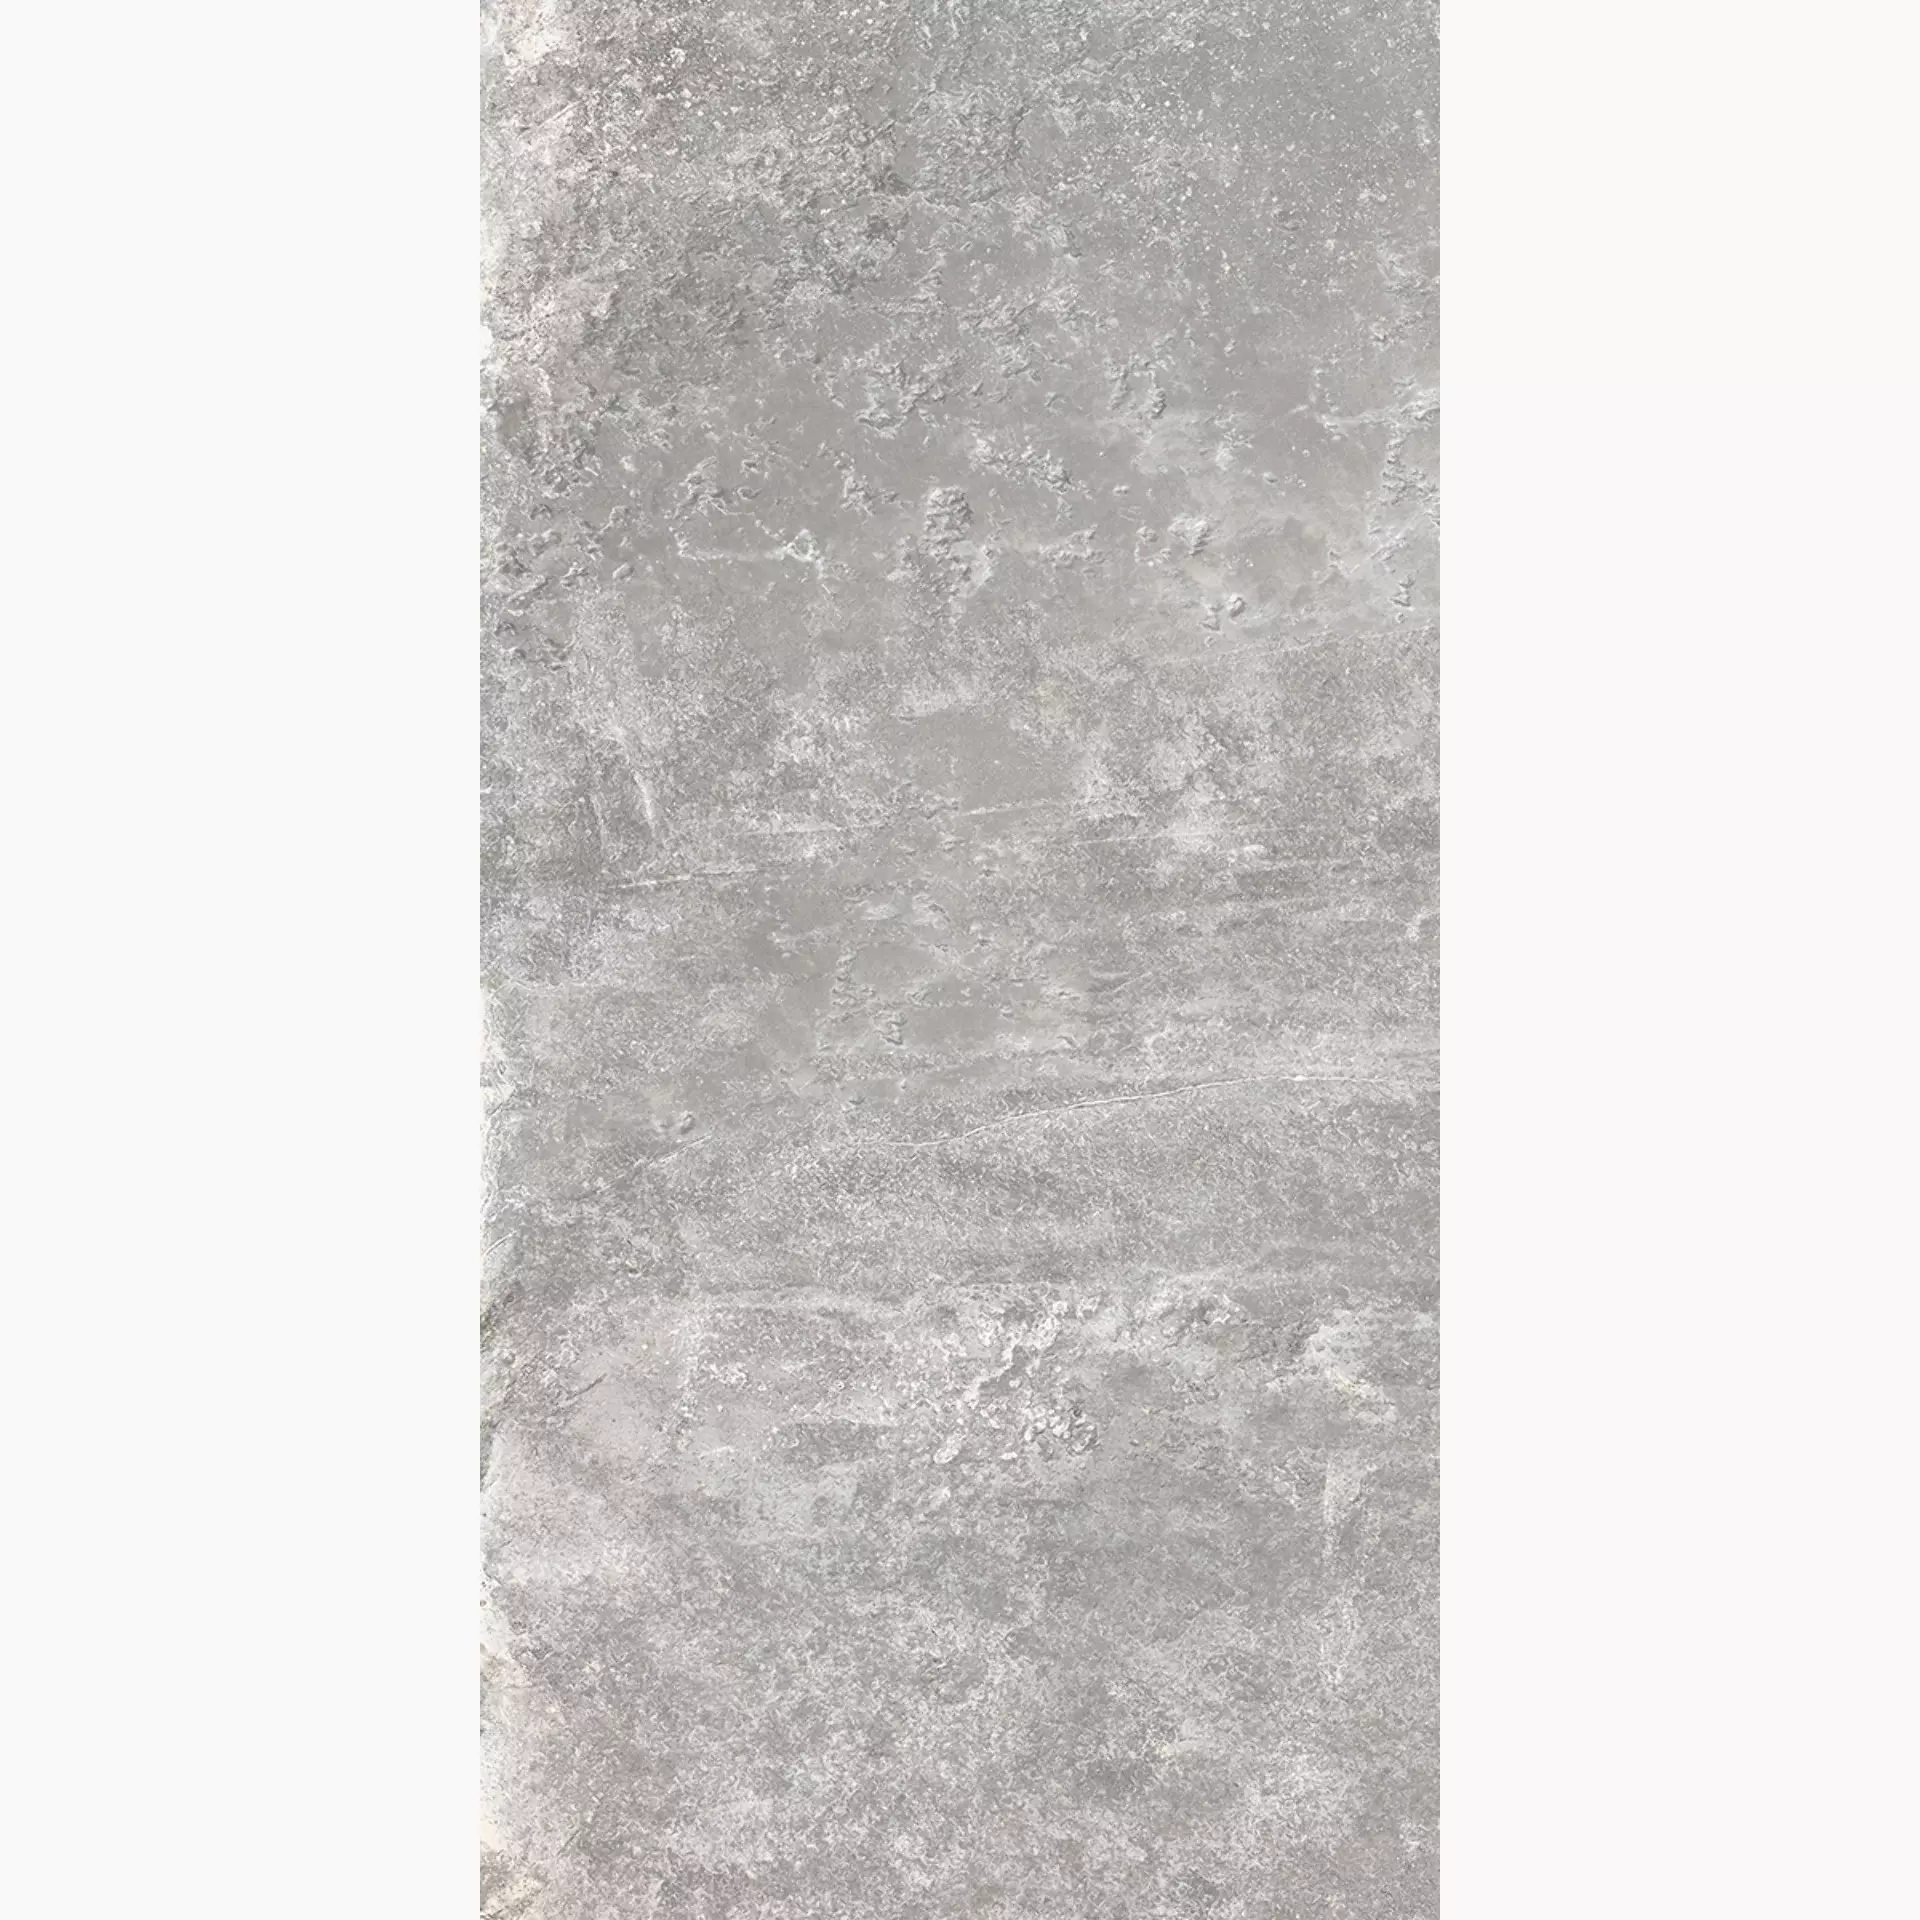 Rondine Ardesie Grey Naturale J87002 30x60cm rektifiziert 8,5mm